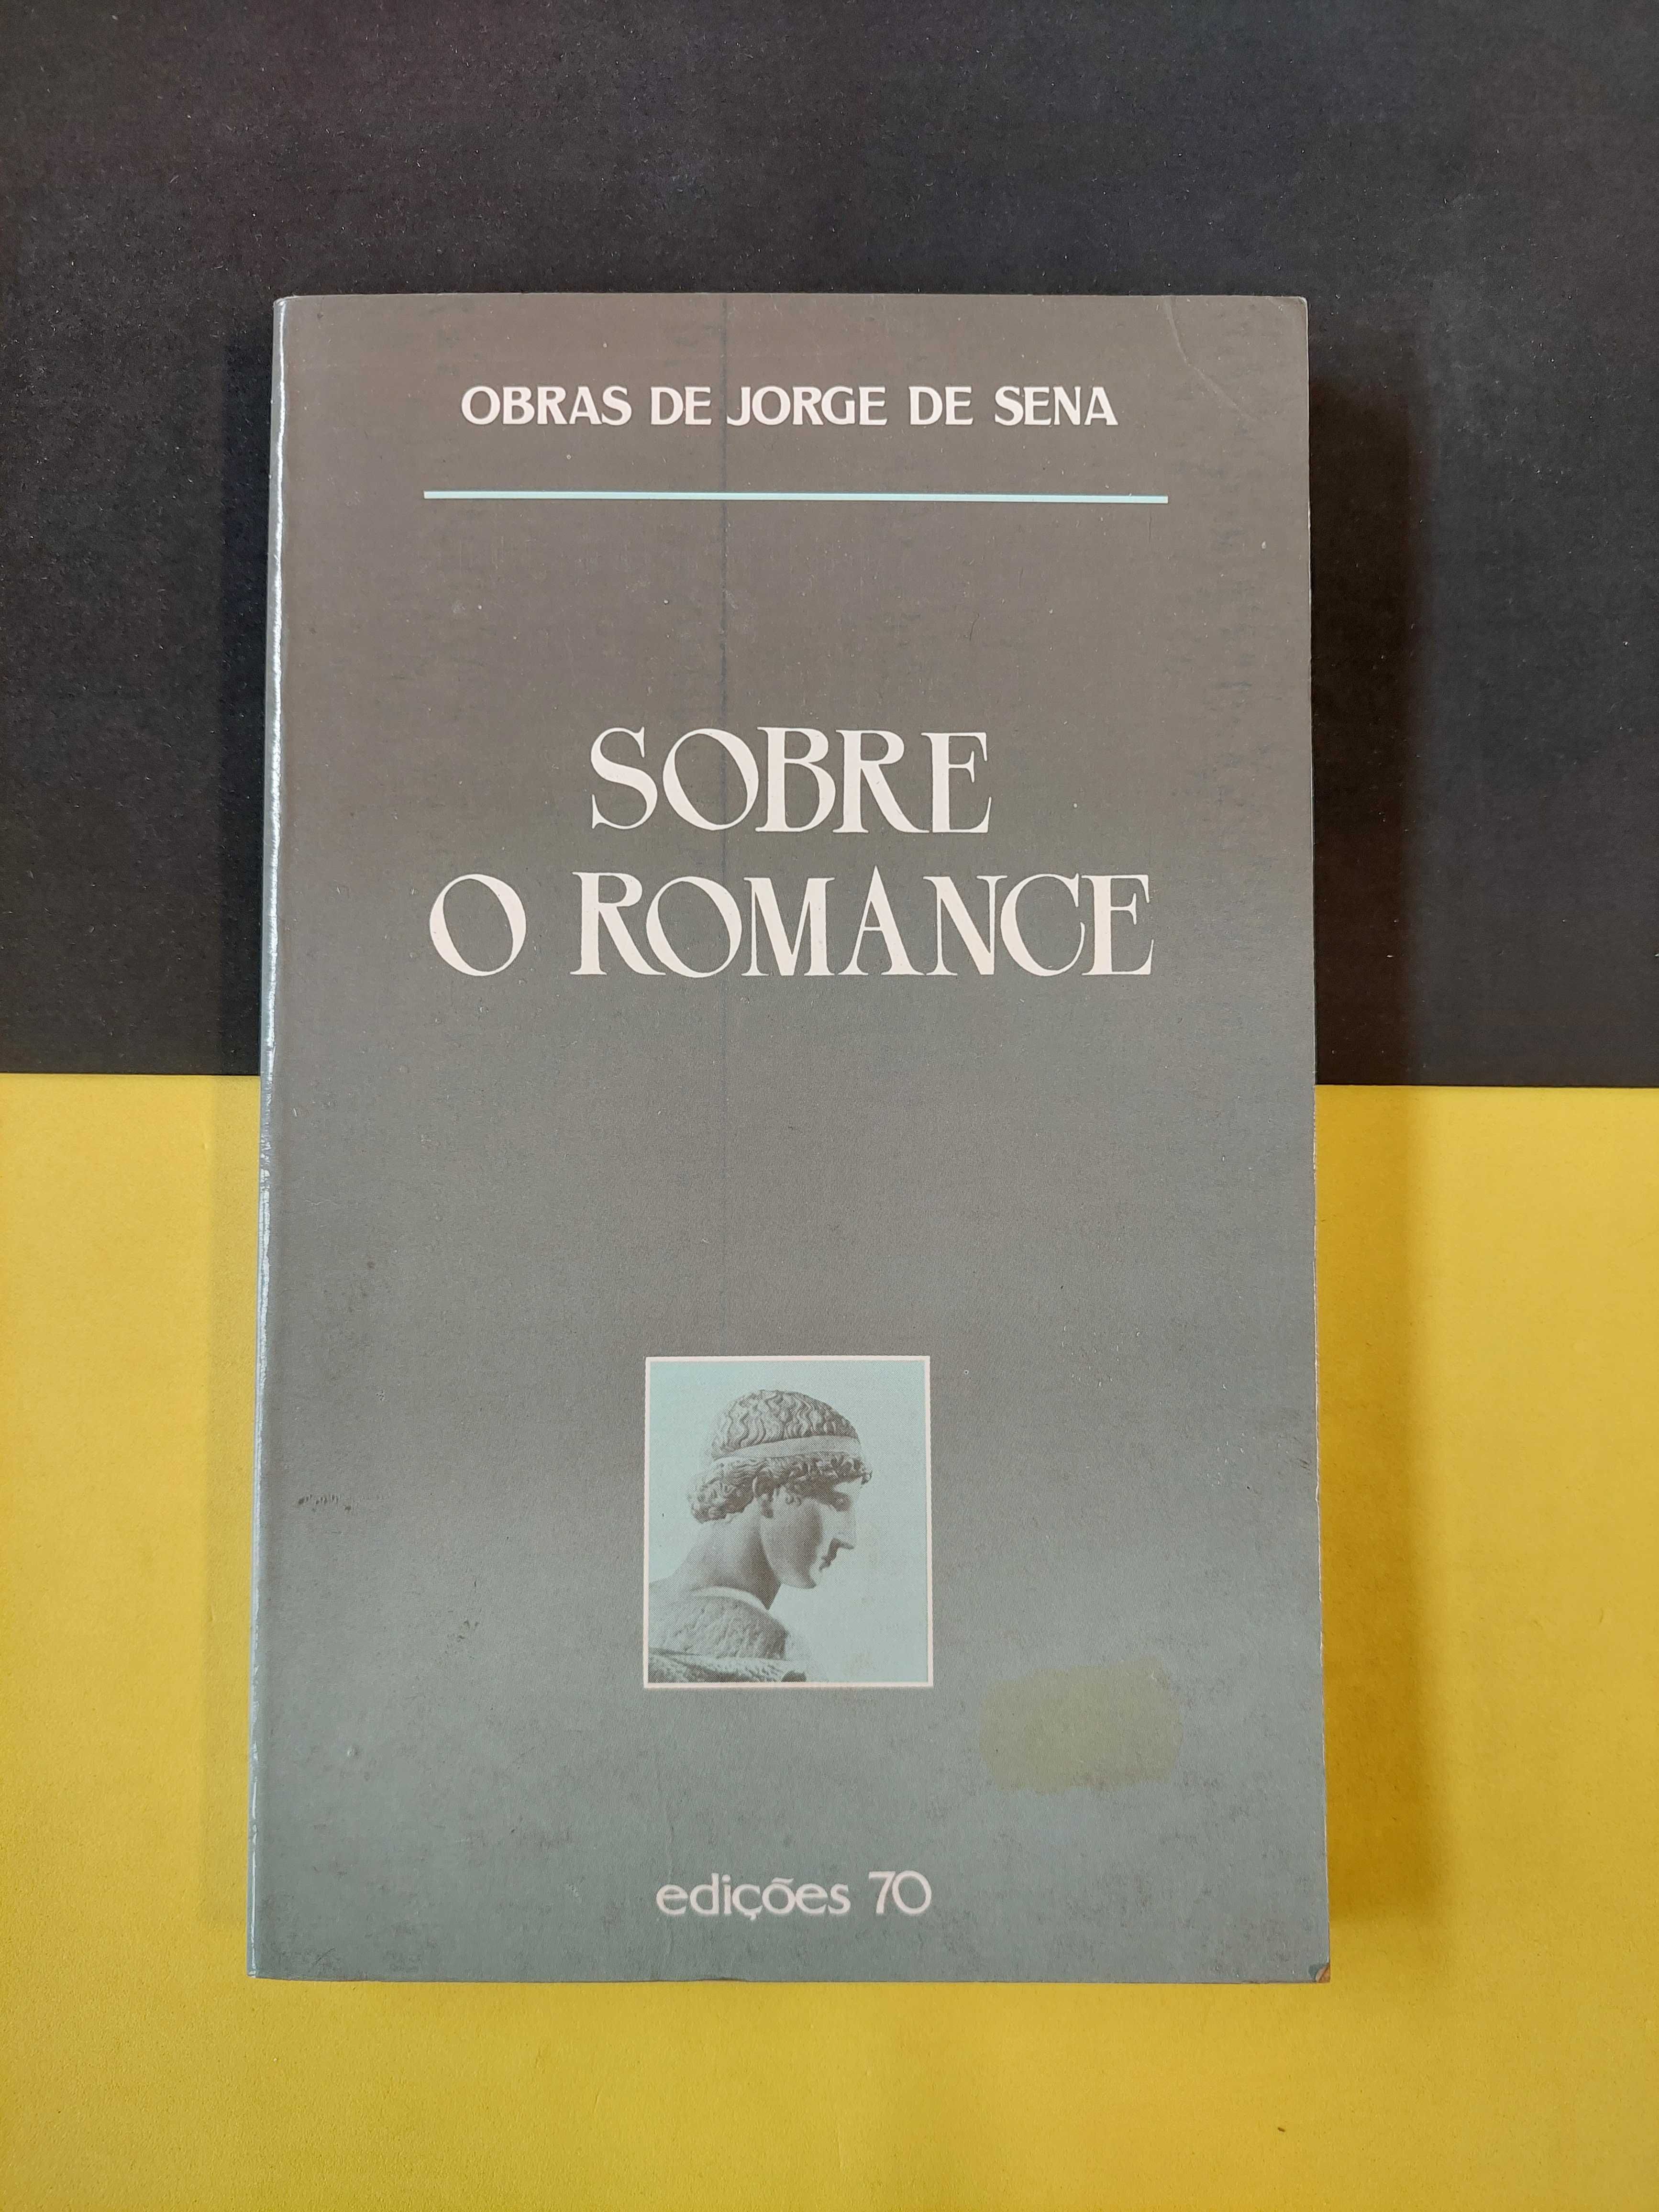 Jorge de Sena - Sobre o romance